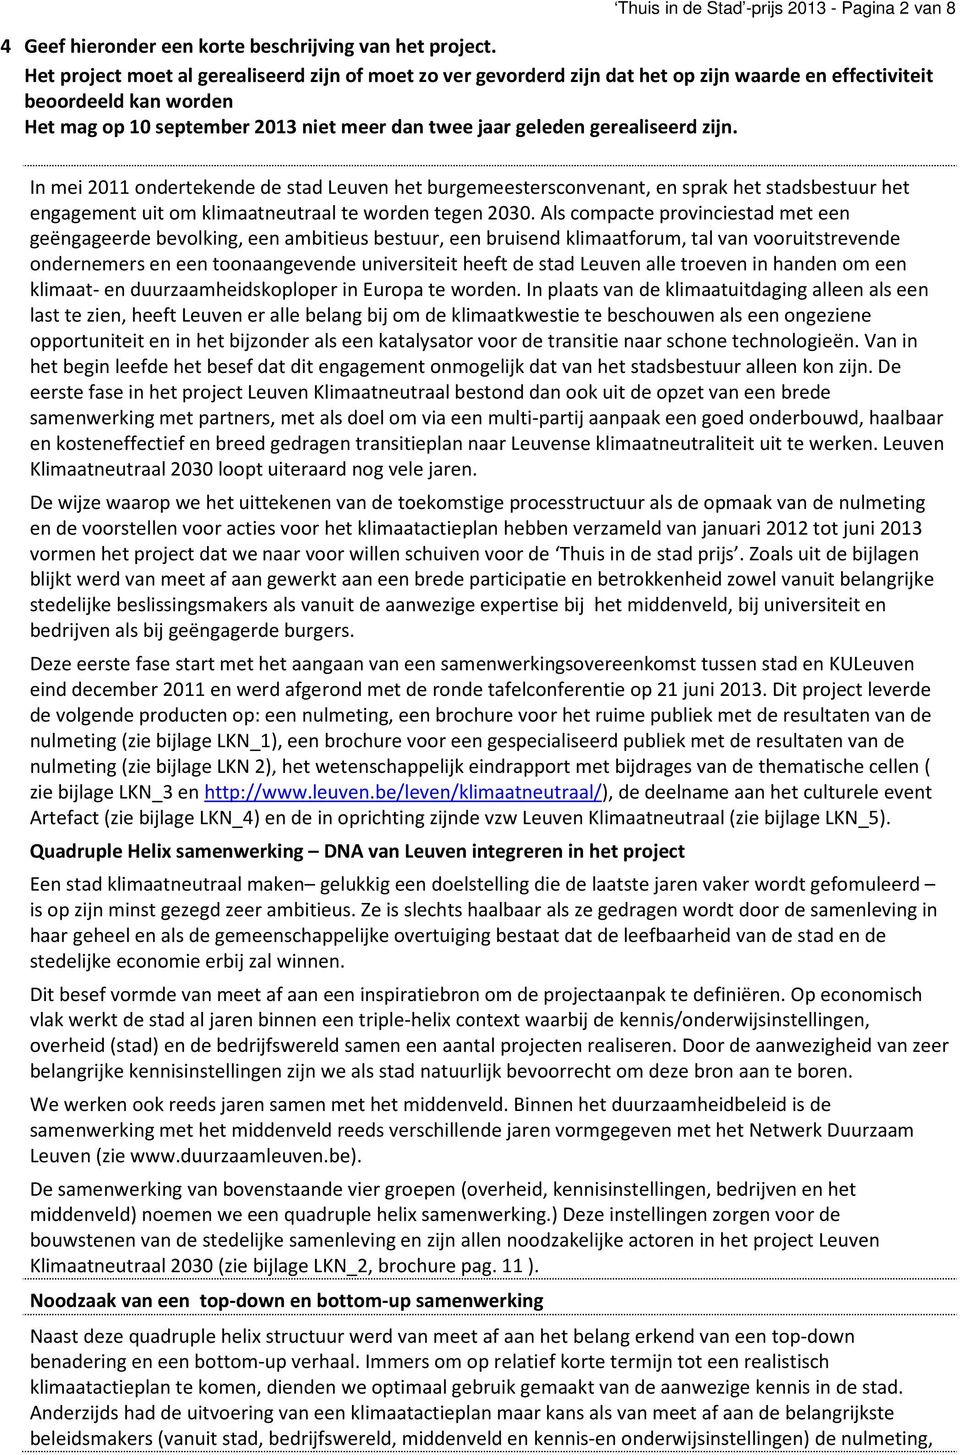 gerealiseerd zijn. In mei 2011 ondertekende de stad Leuven het burgemeestersconvenant, en sprak het stadsbestuur het engagement uit om klimaatneutraal te worden tegen 2030.